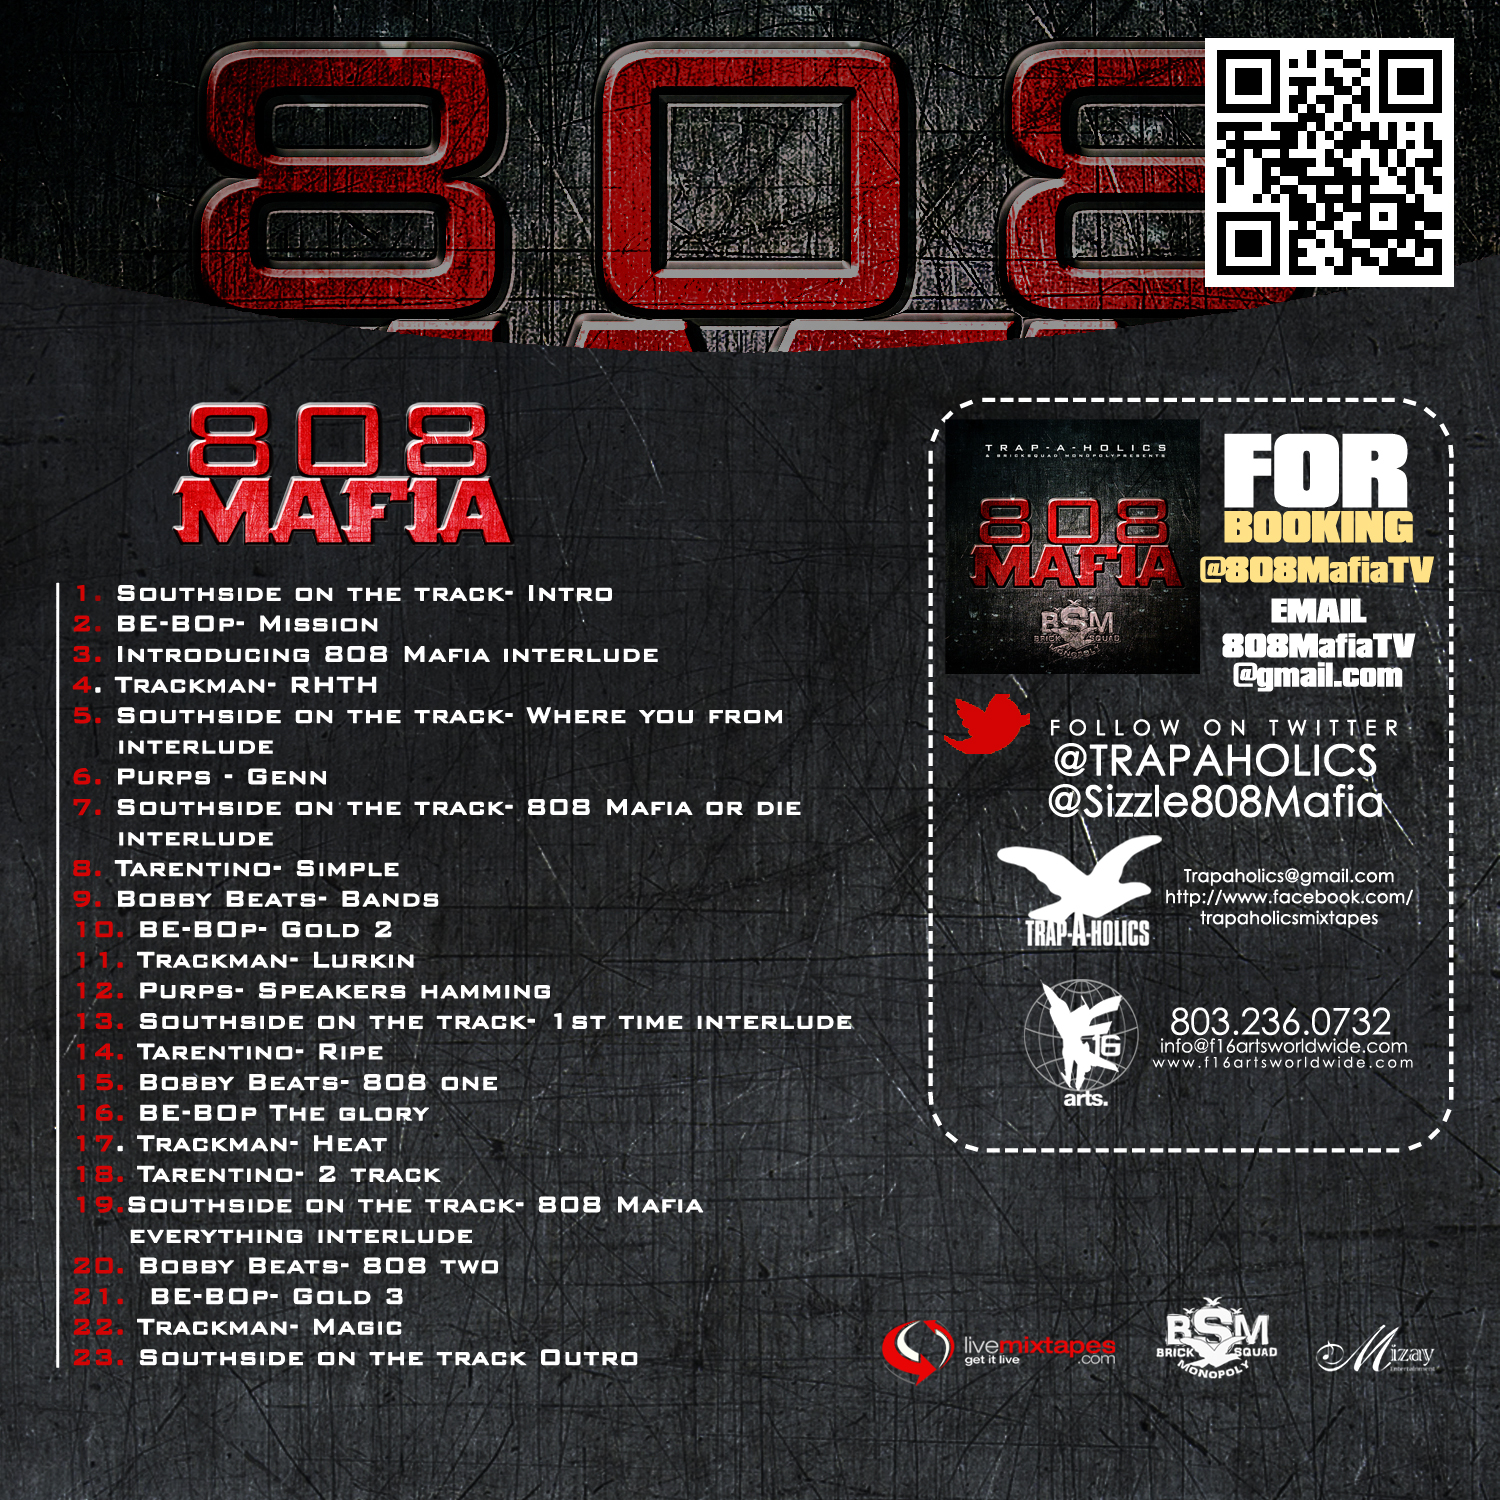 Trap-A-Holics Presents: "808 Mafia" Mixtape.